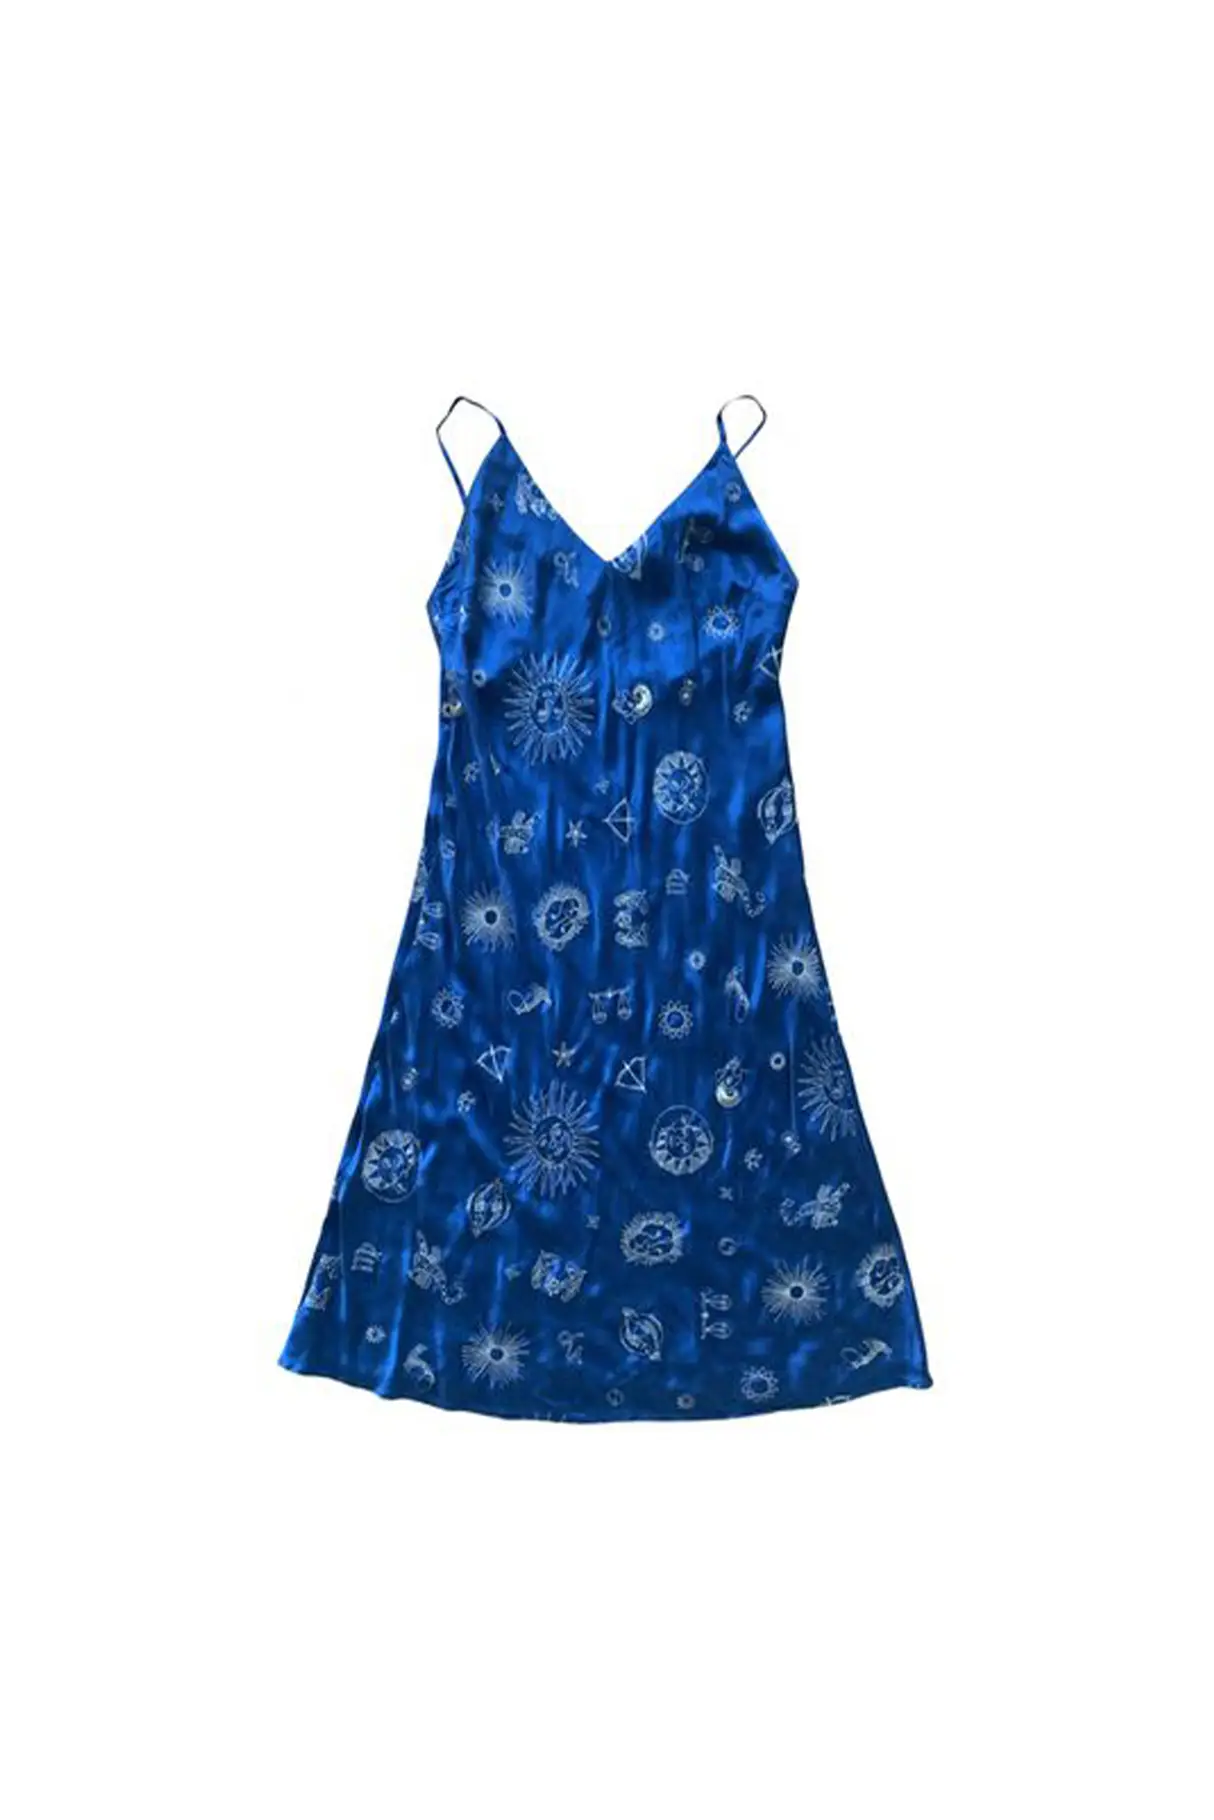 dress-made-1996-in-blue-silk.jpg